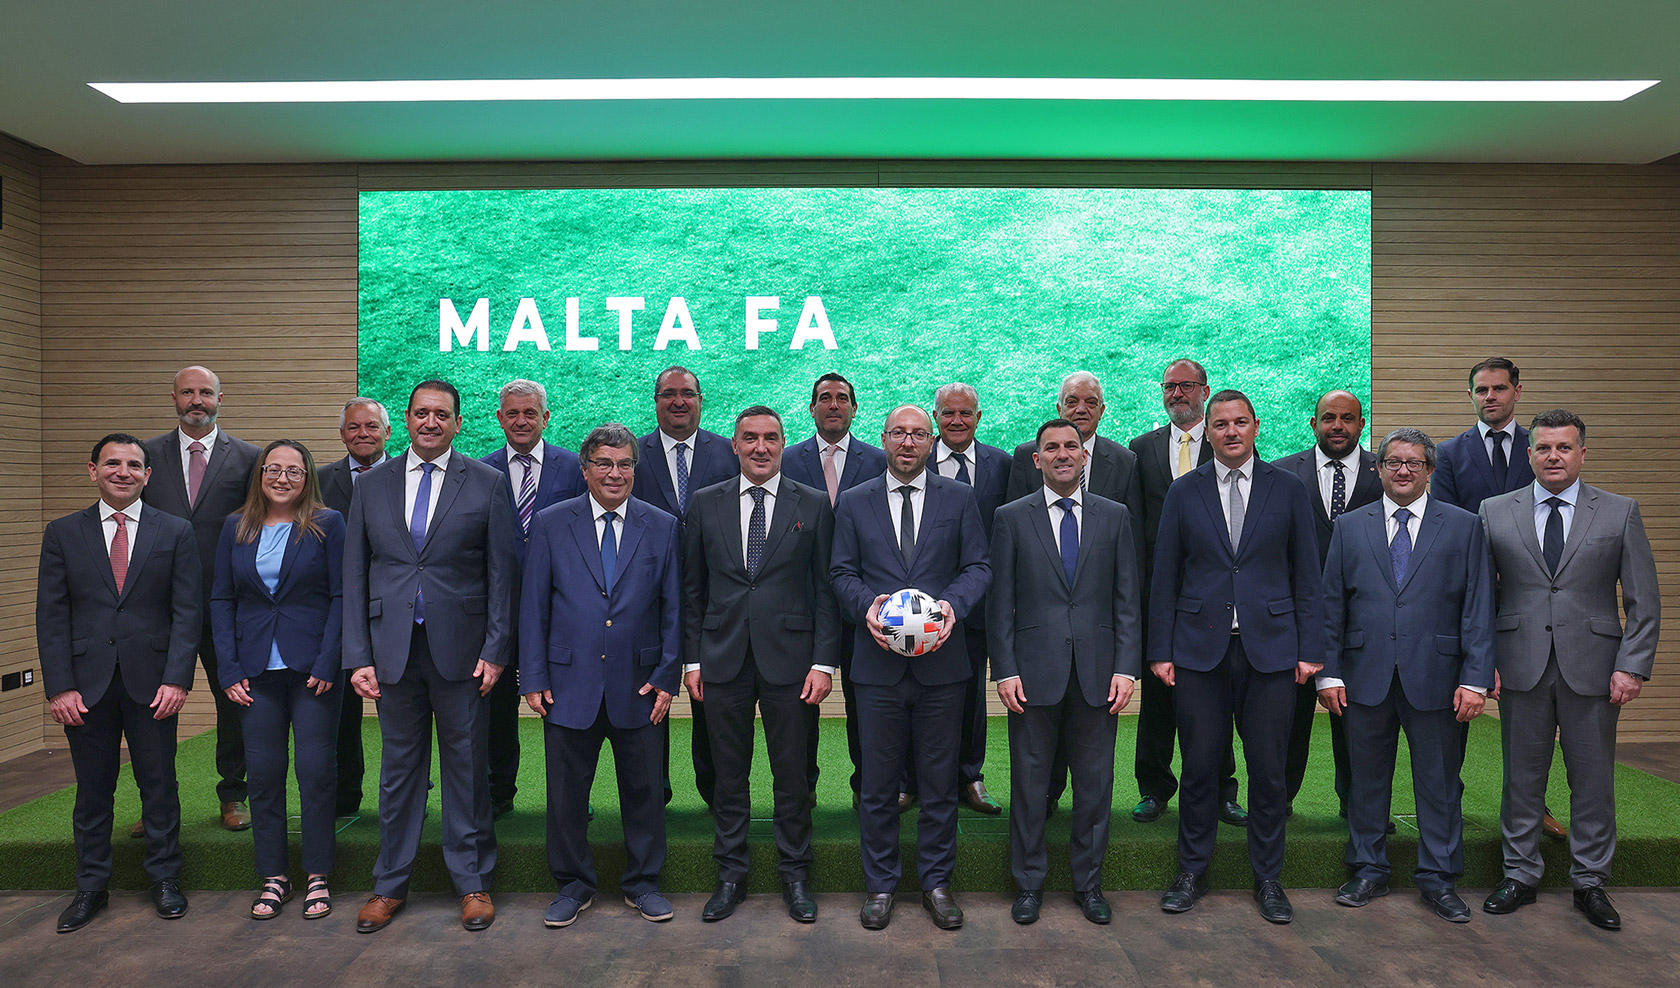 Malta FA Executive Board